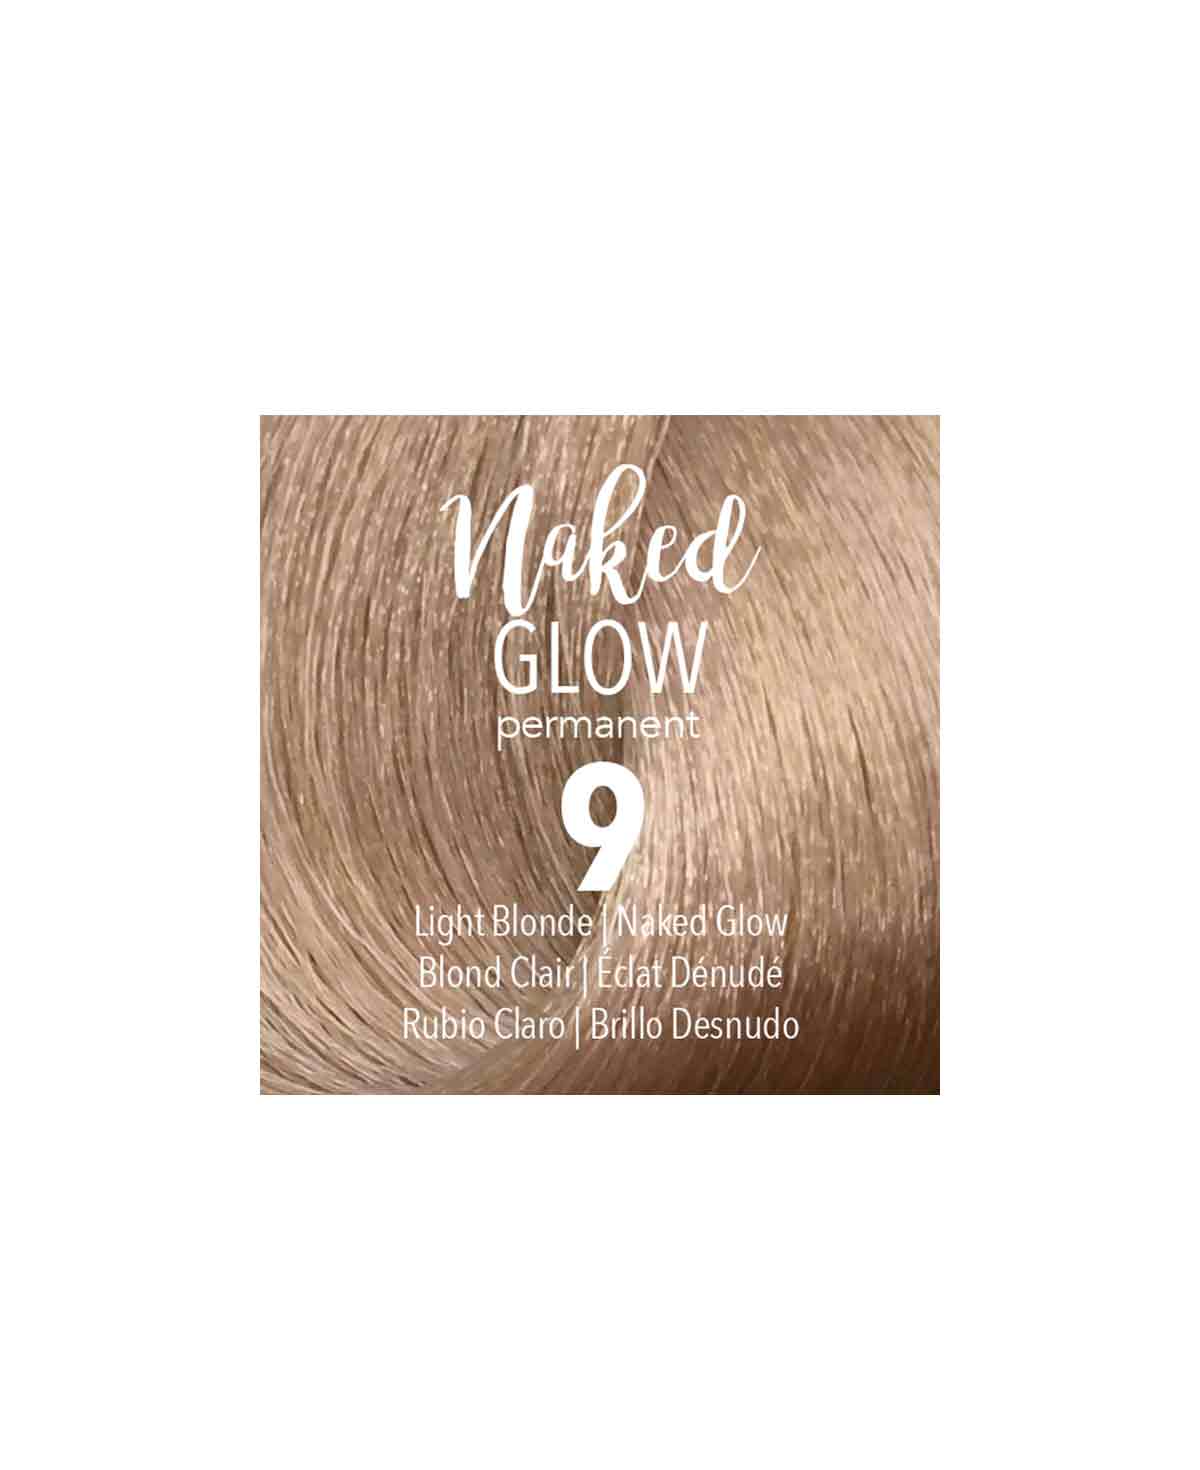 Mydentity - 9 Light Blonde Naked Glow